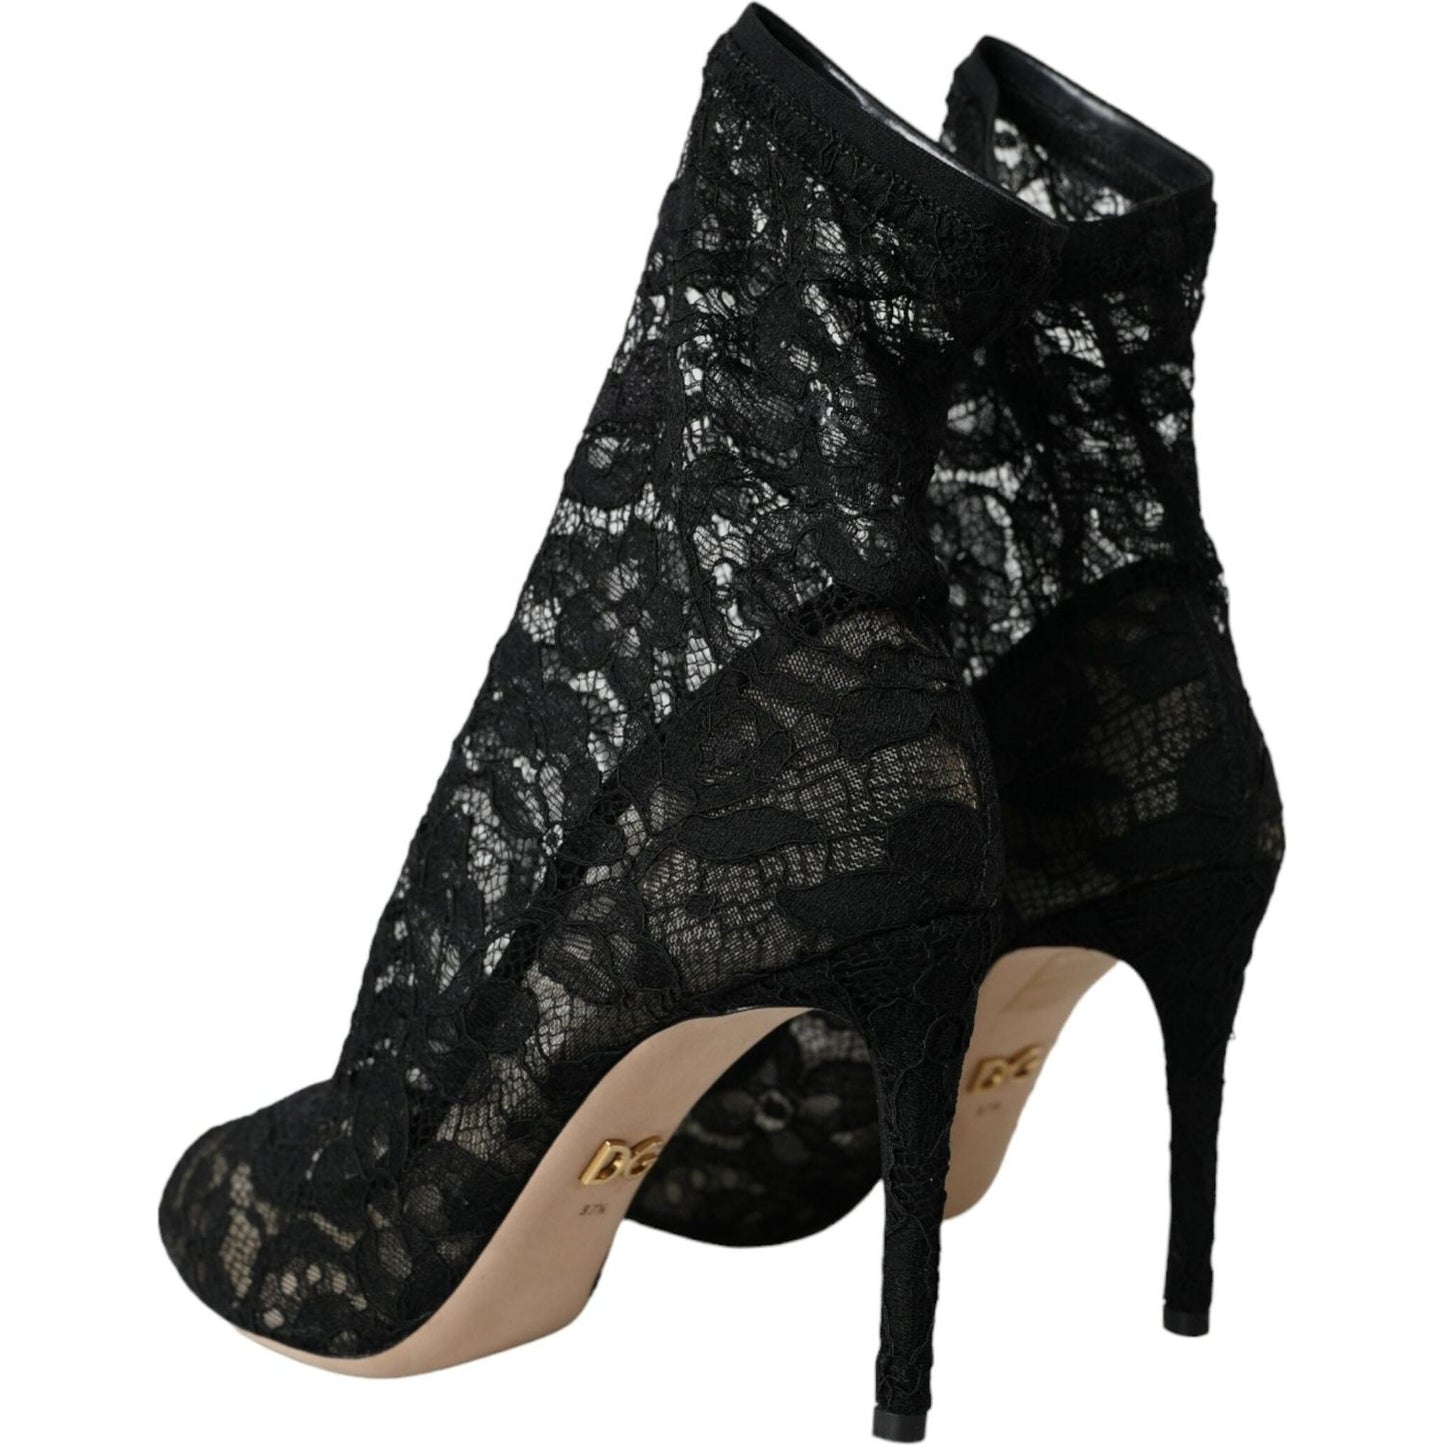 Dolce & Gabbana Black Stretch Taormina Lace Boots Shoes black-stretch-taormina-lace-boots-shoes